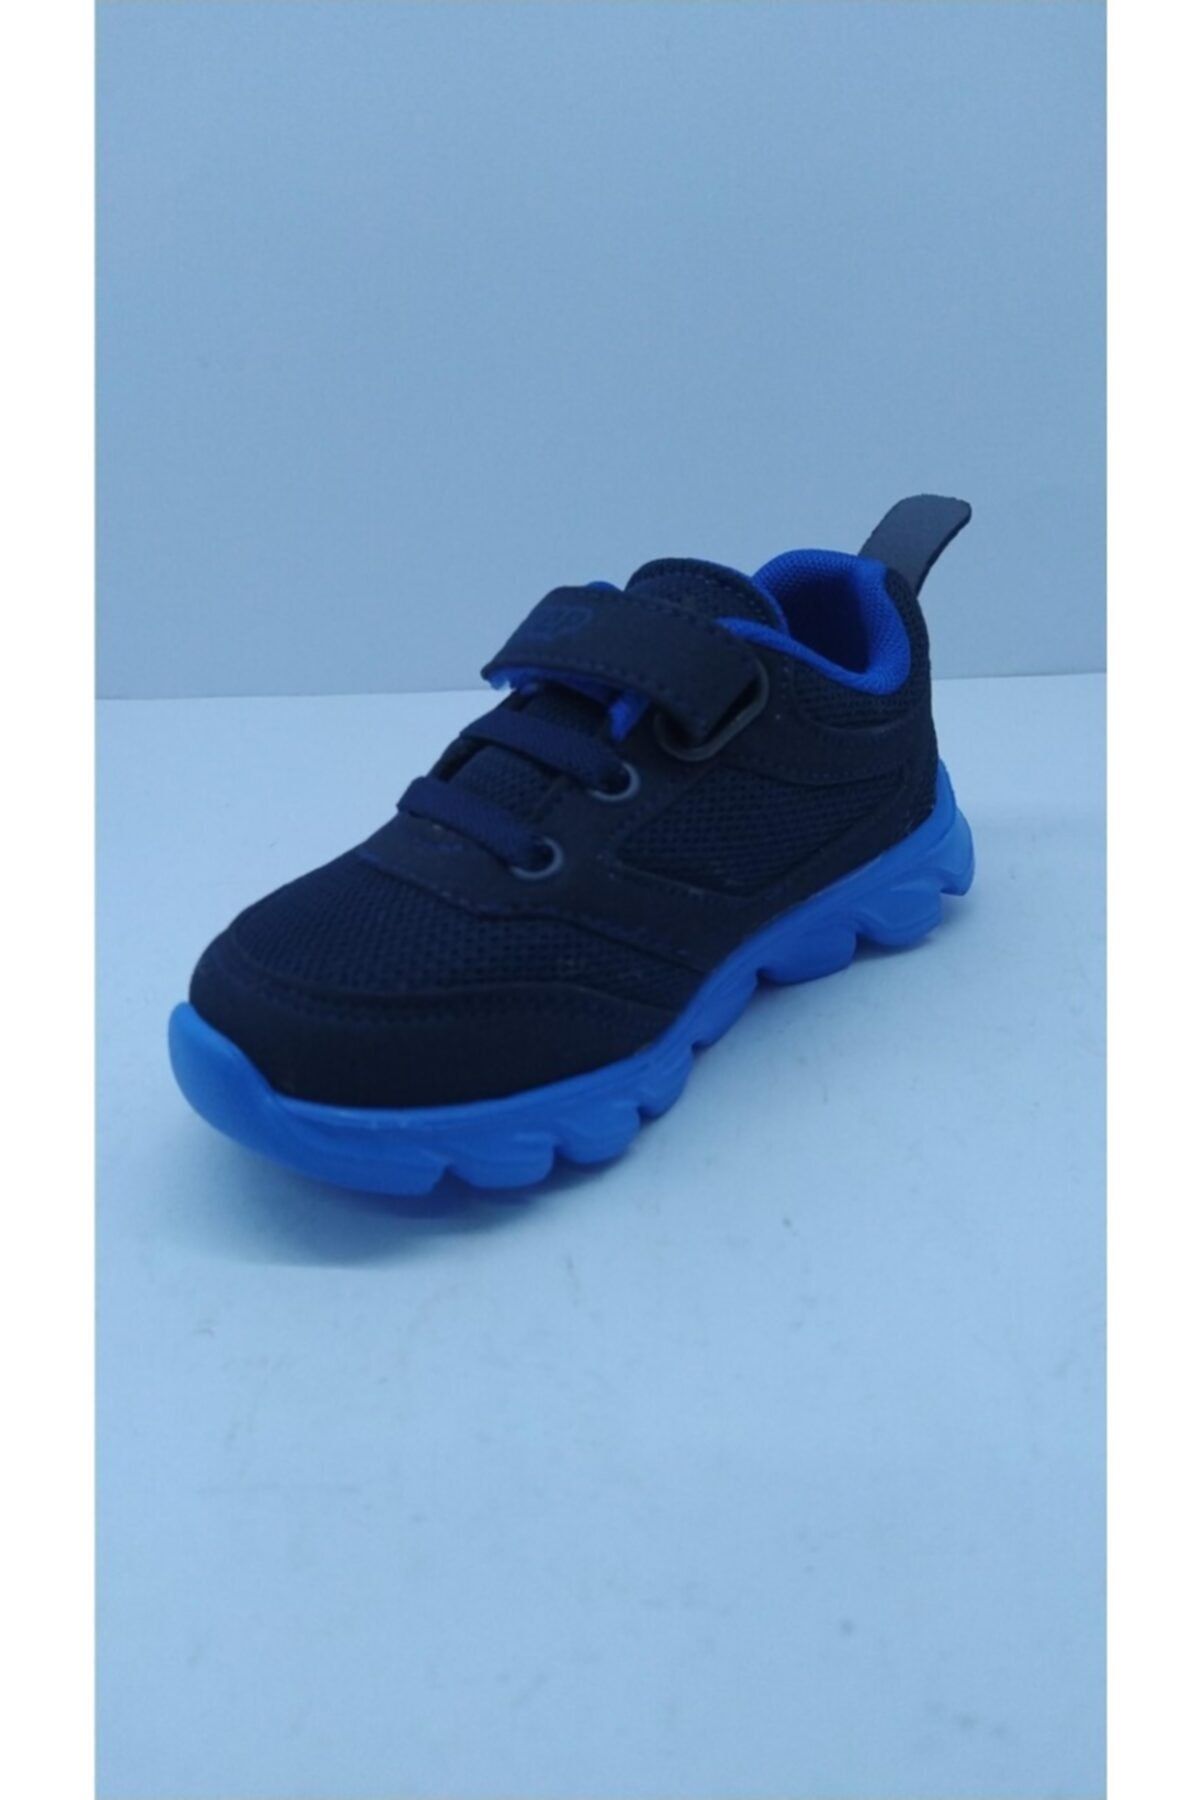 Nstep Erkek Çocuk Lacivert Mavi Spor Ayakkabı